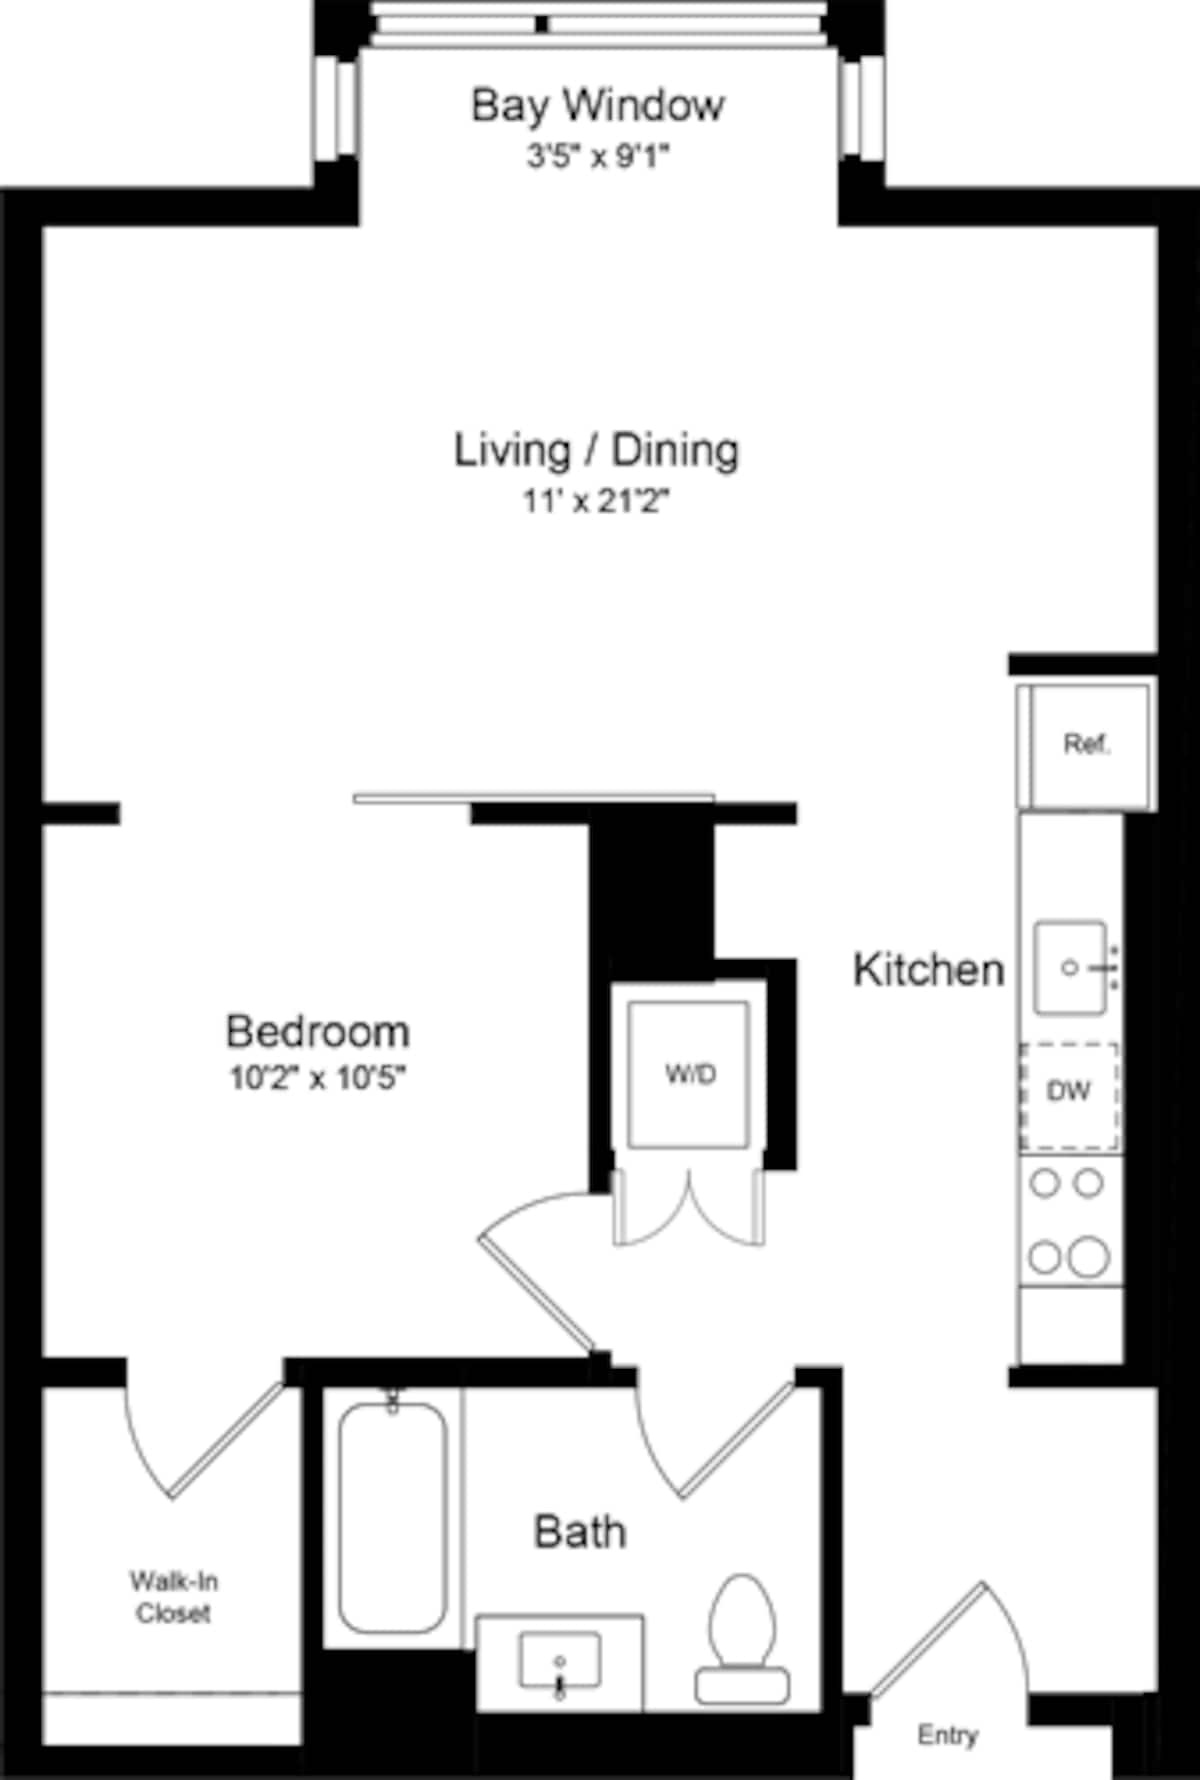 Floorplan diagram for 1 Bedroom D, showing 1 bedroom